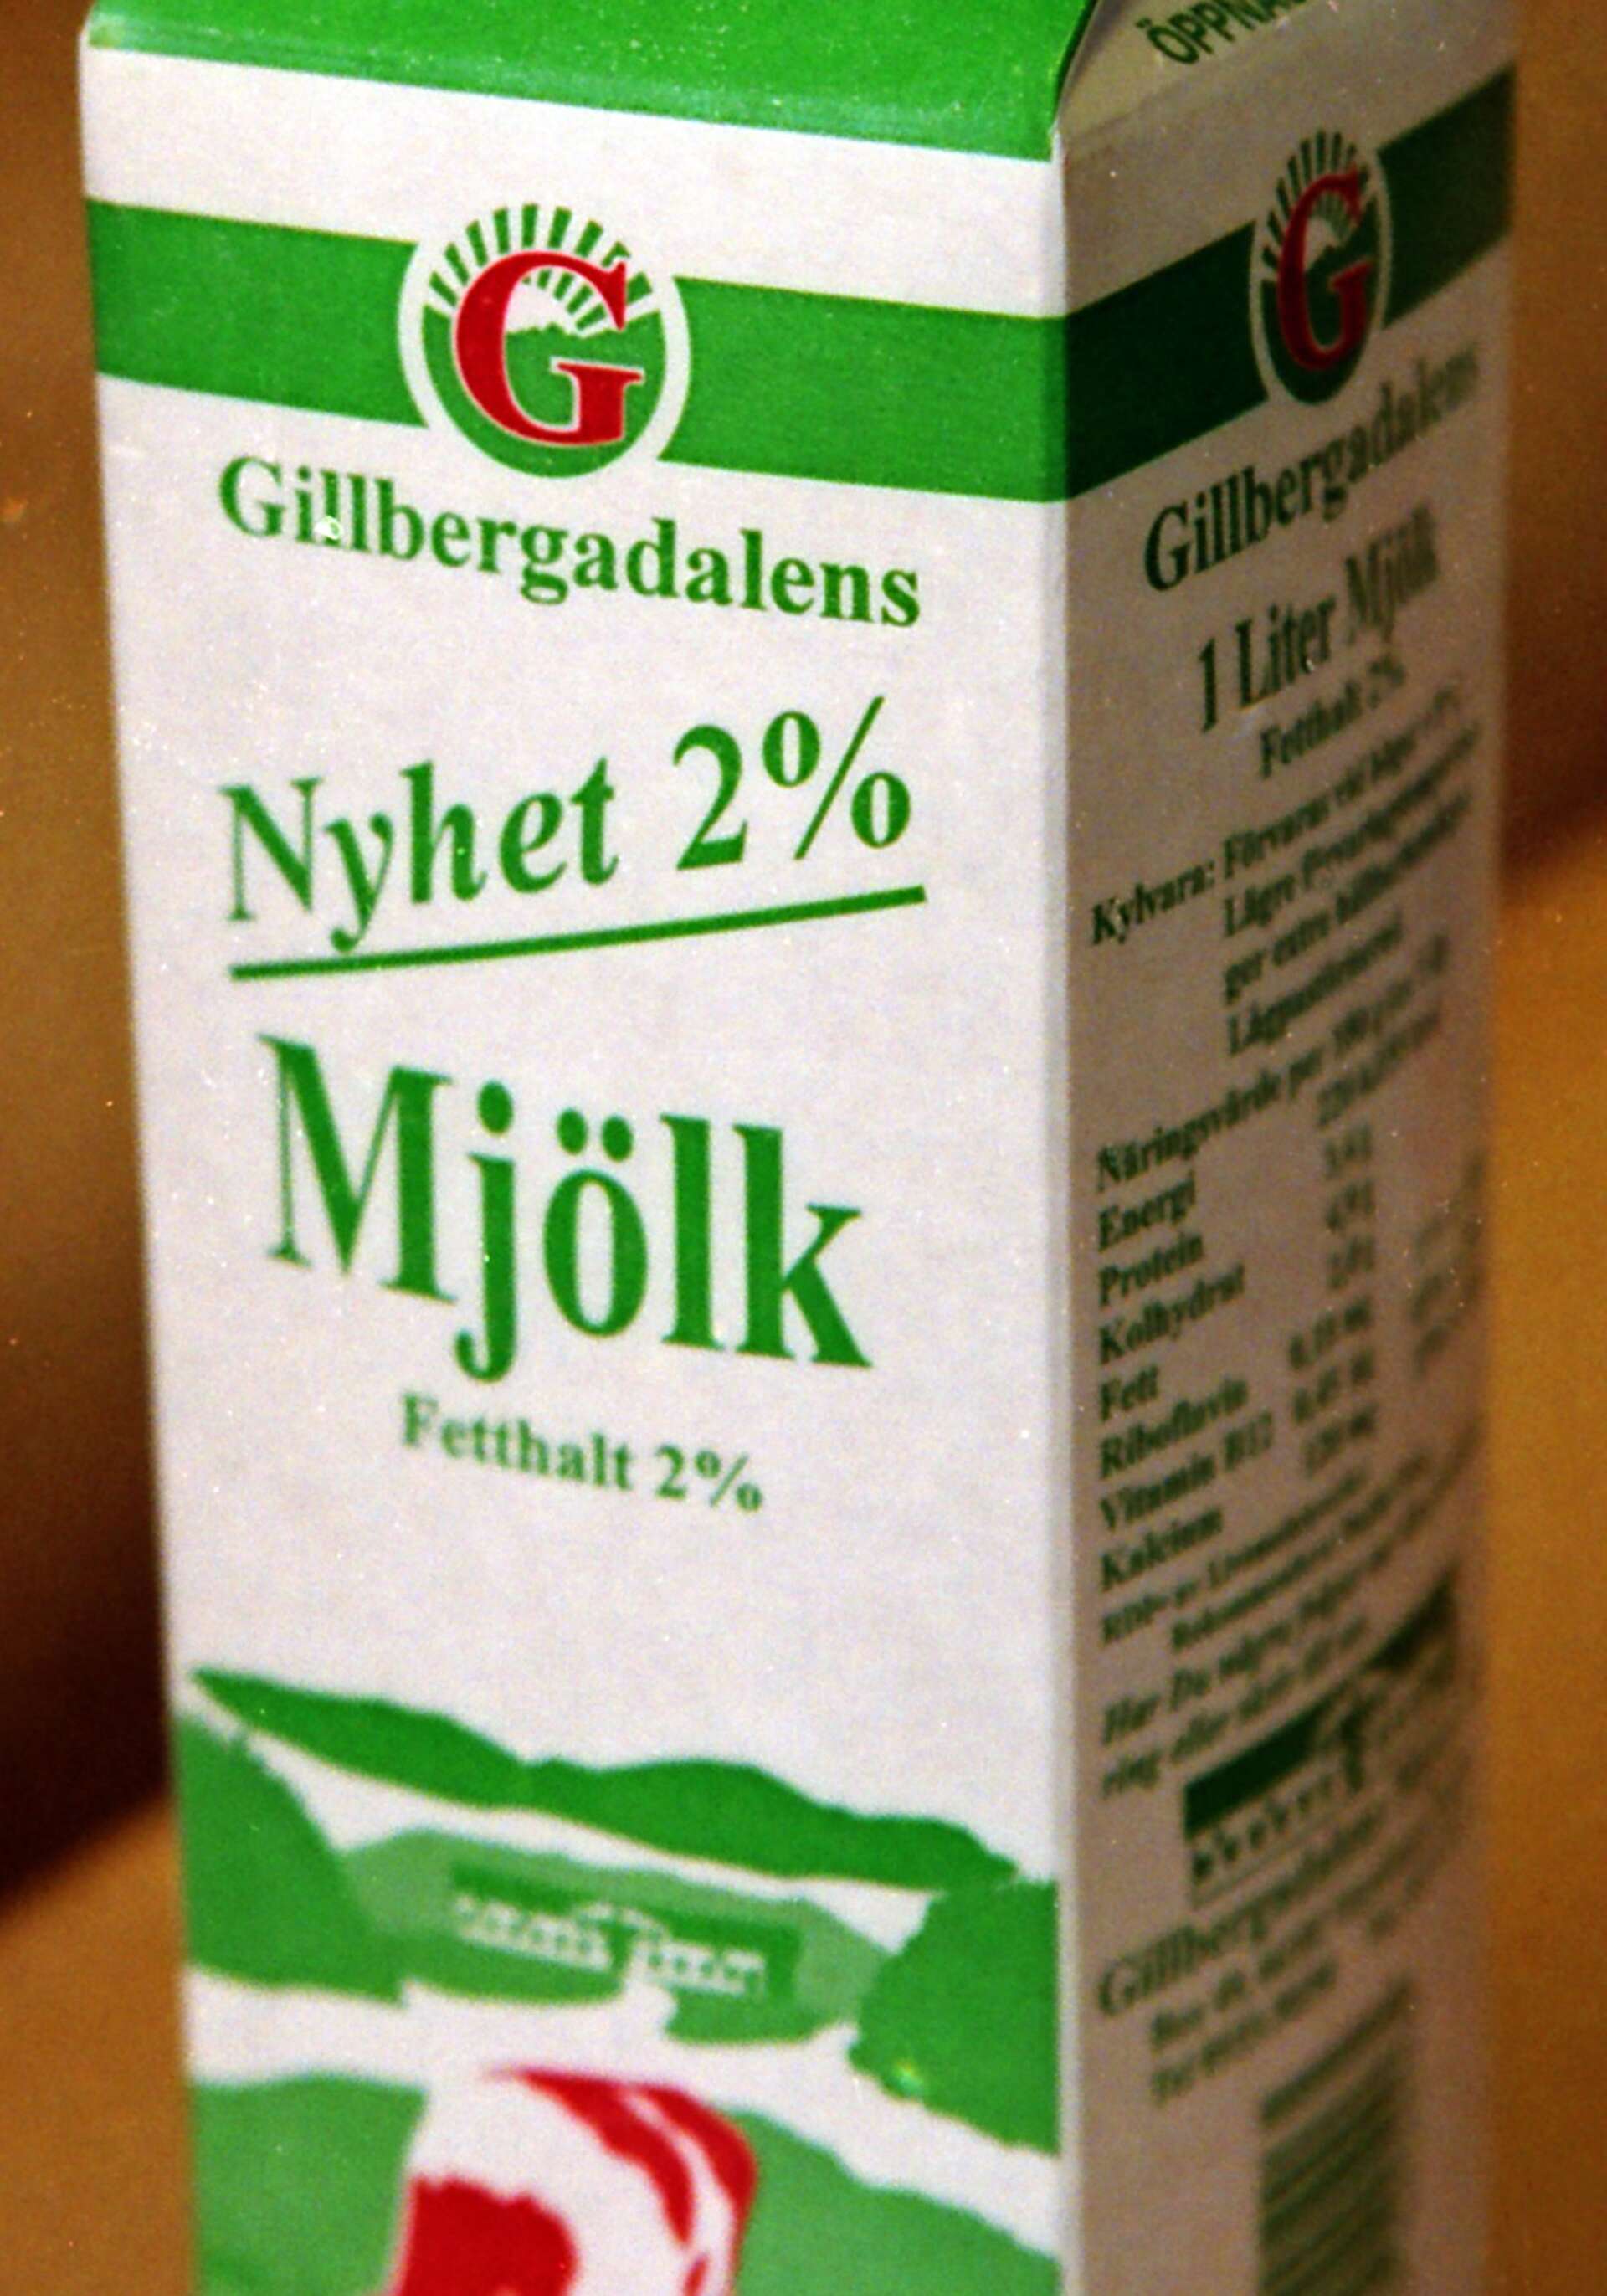 Efter många hinder på vägen kunde Gillbergadalens mejeri i Nysäter starta produktionen på vårkanten. Det blev tyvärr en kortlivad verksamhet. Redan efter ett halvt år kom beskedet om konkurs. 